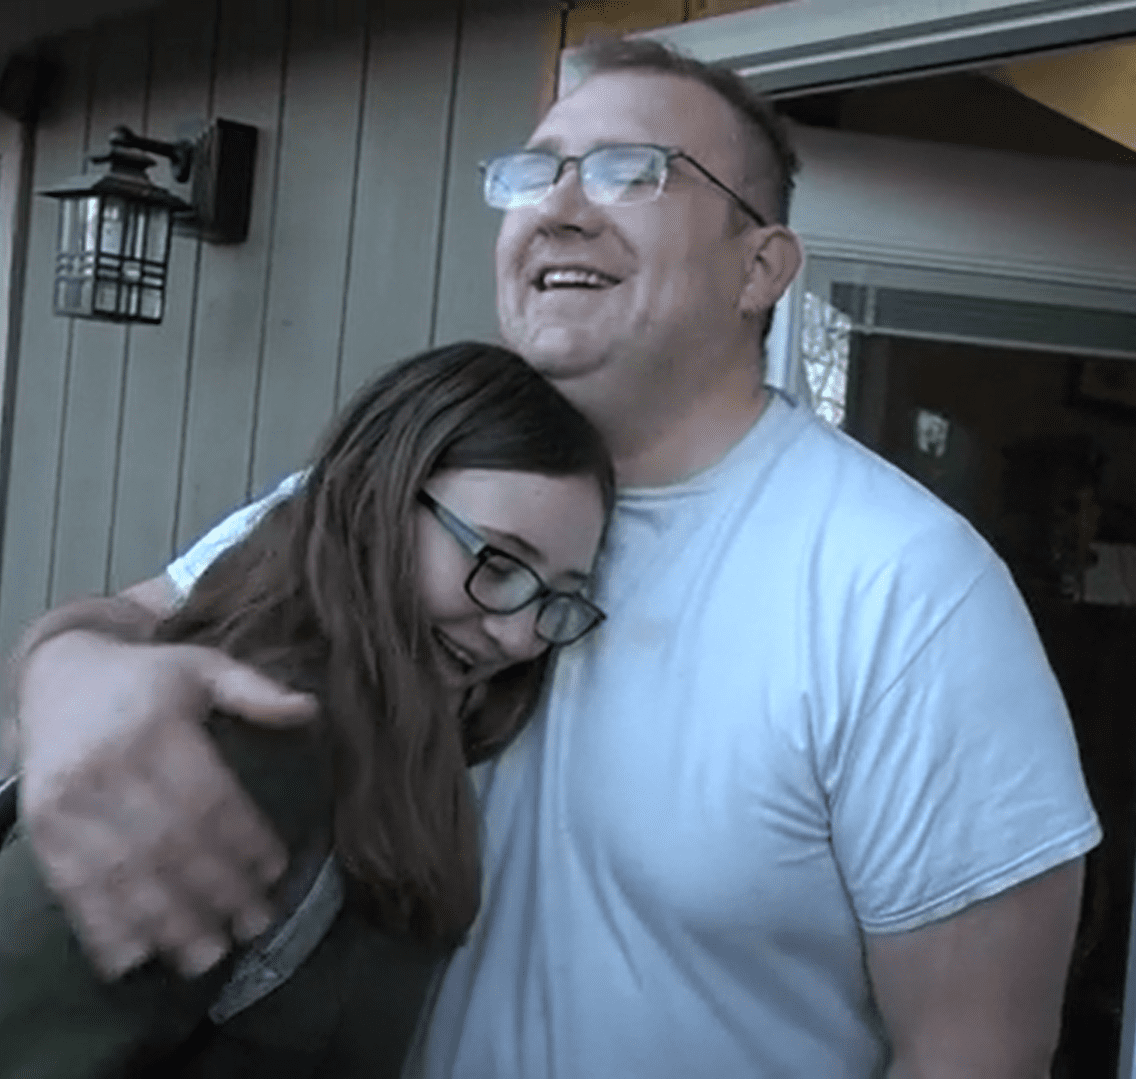 Emily abrazando a su padre después de darle la buena noticia. | Foto: Youtube.com/East Idaho News